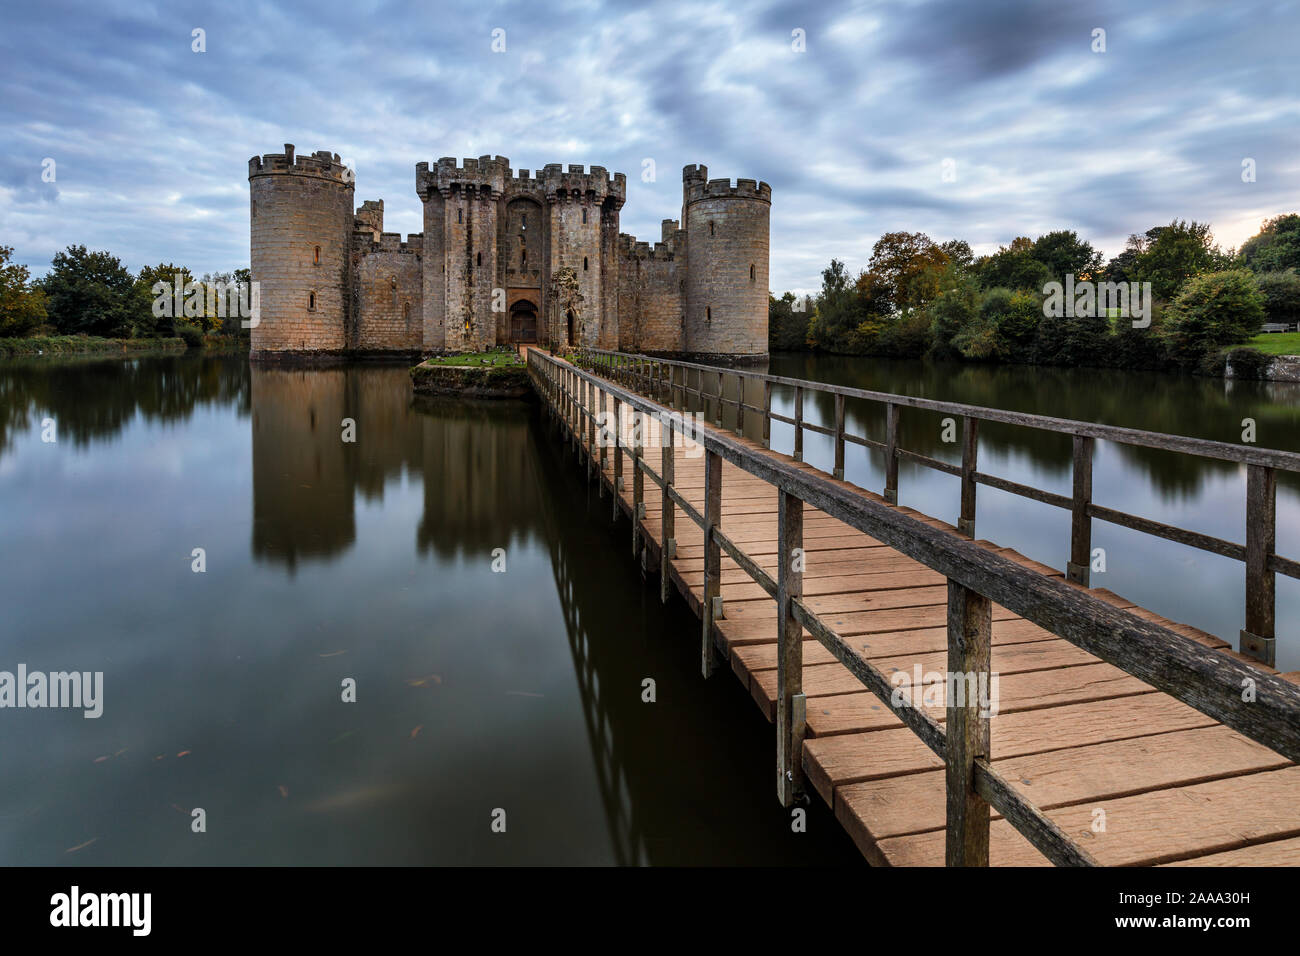 Château de Bodiam en automne. Un château fort du 14ème siècle dans l'East Sussex, Angleterre au crépuscule. Banque D'Images